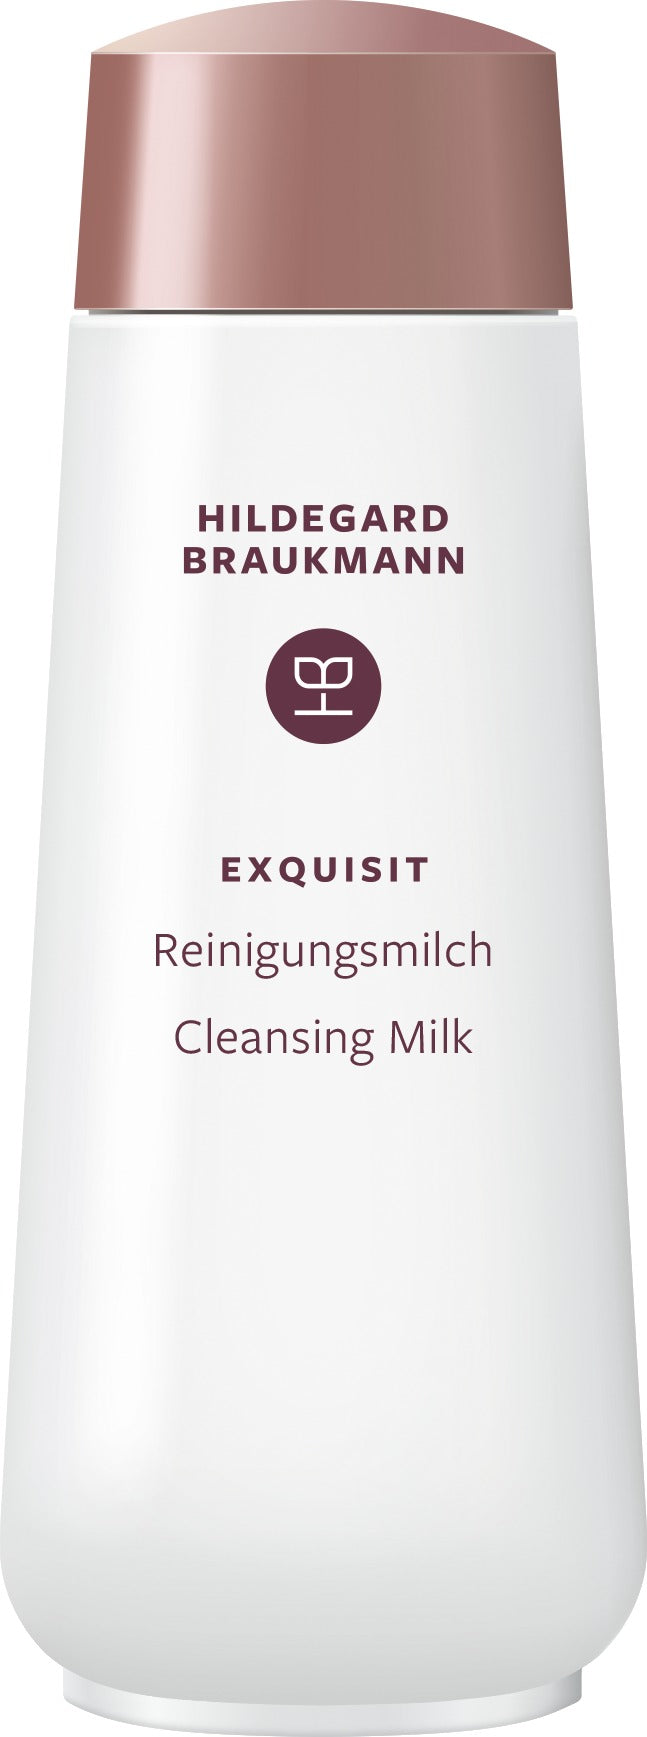 Hildegard Braukmann Exquisit Reinigungsmilch (200ml)